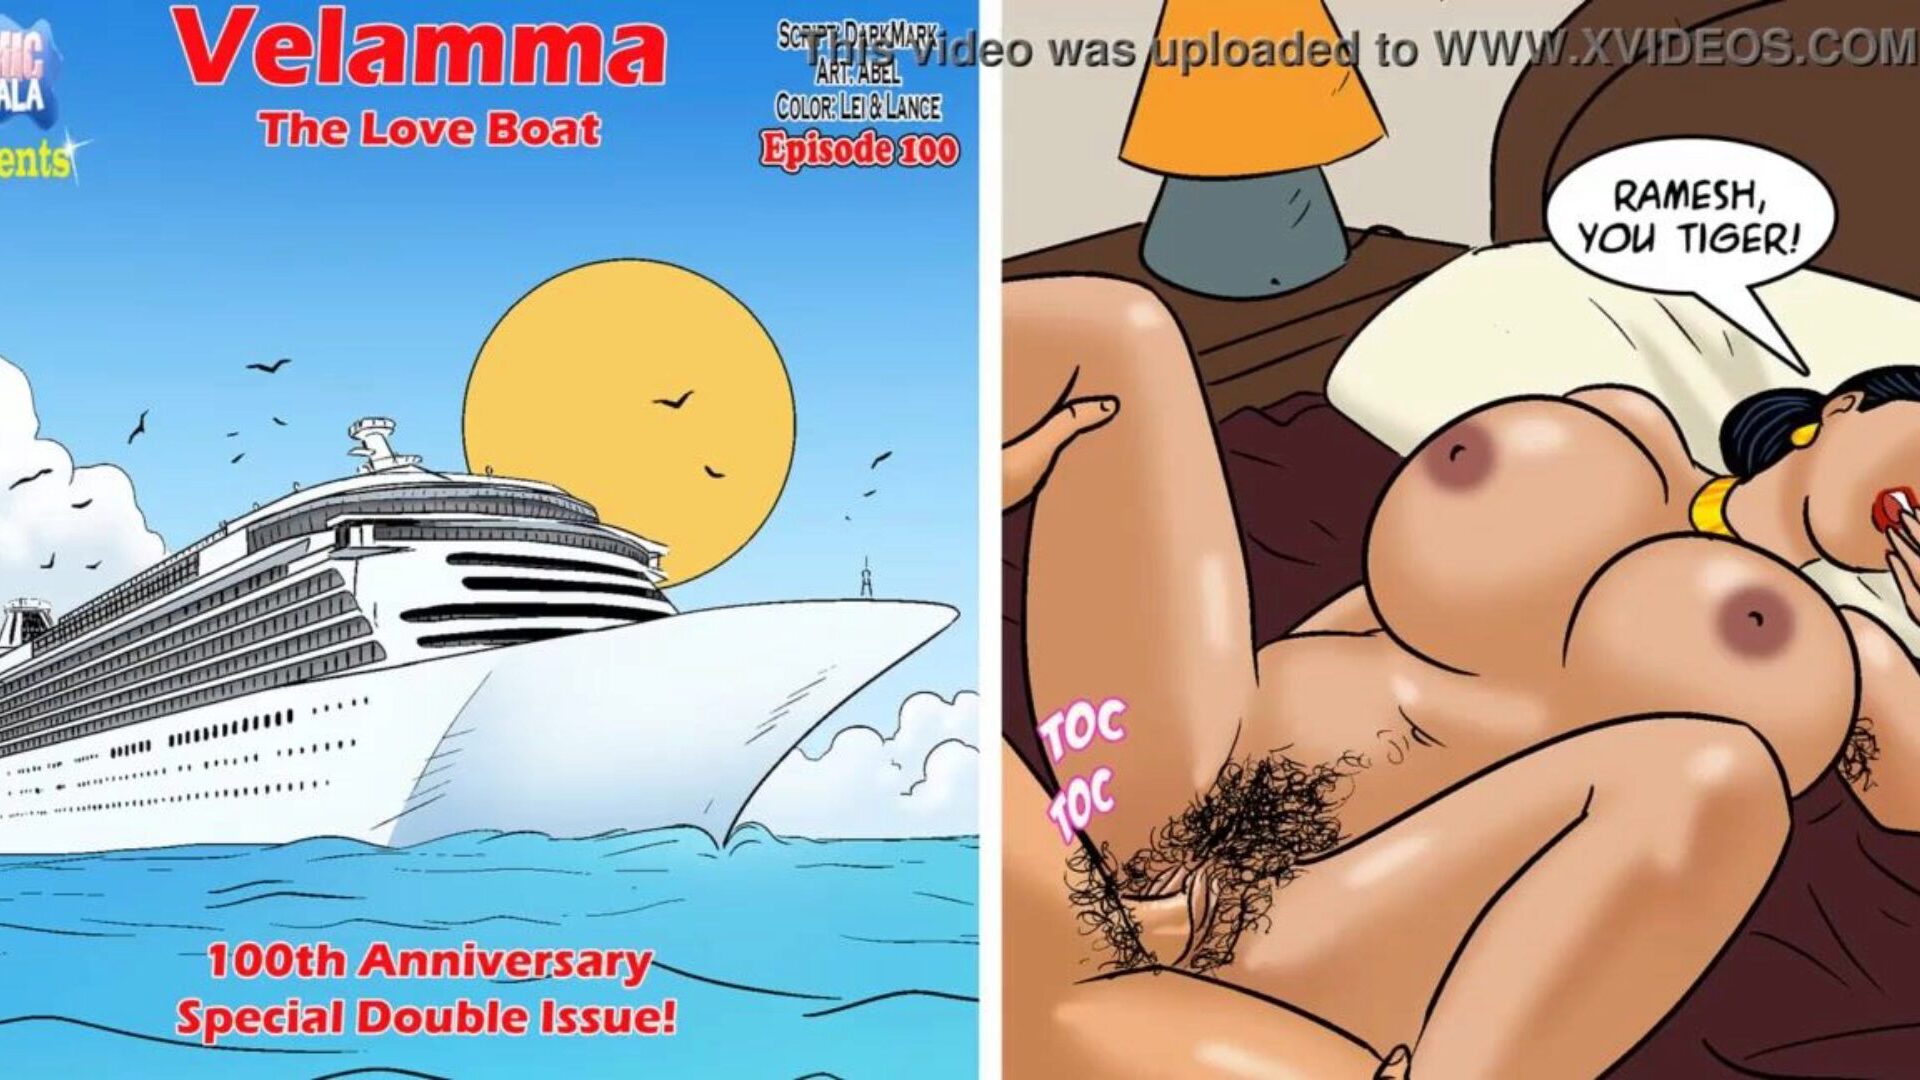 velamma επεισόδιο 100 - το σκάφος αγάπης